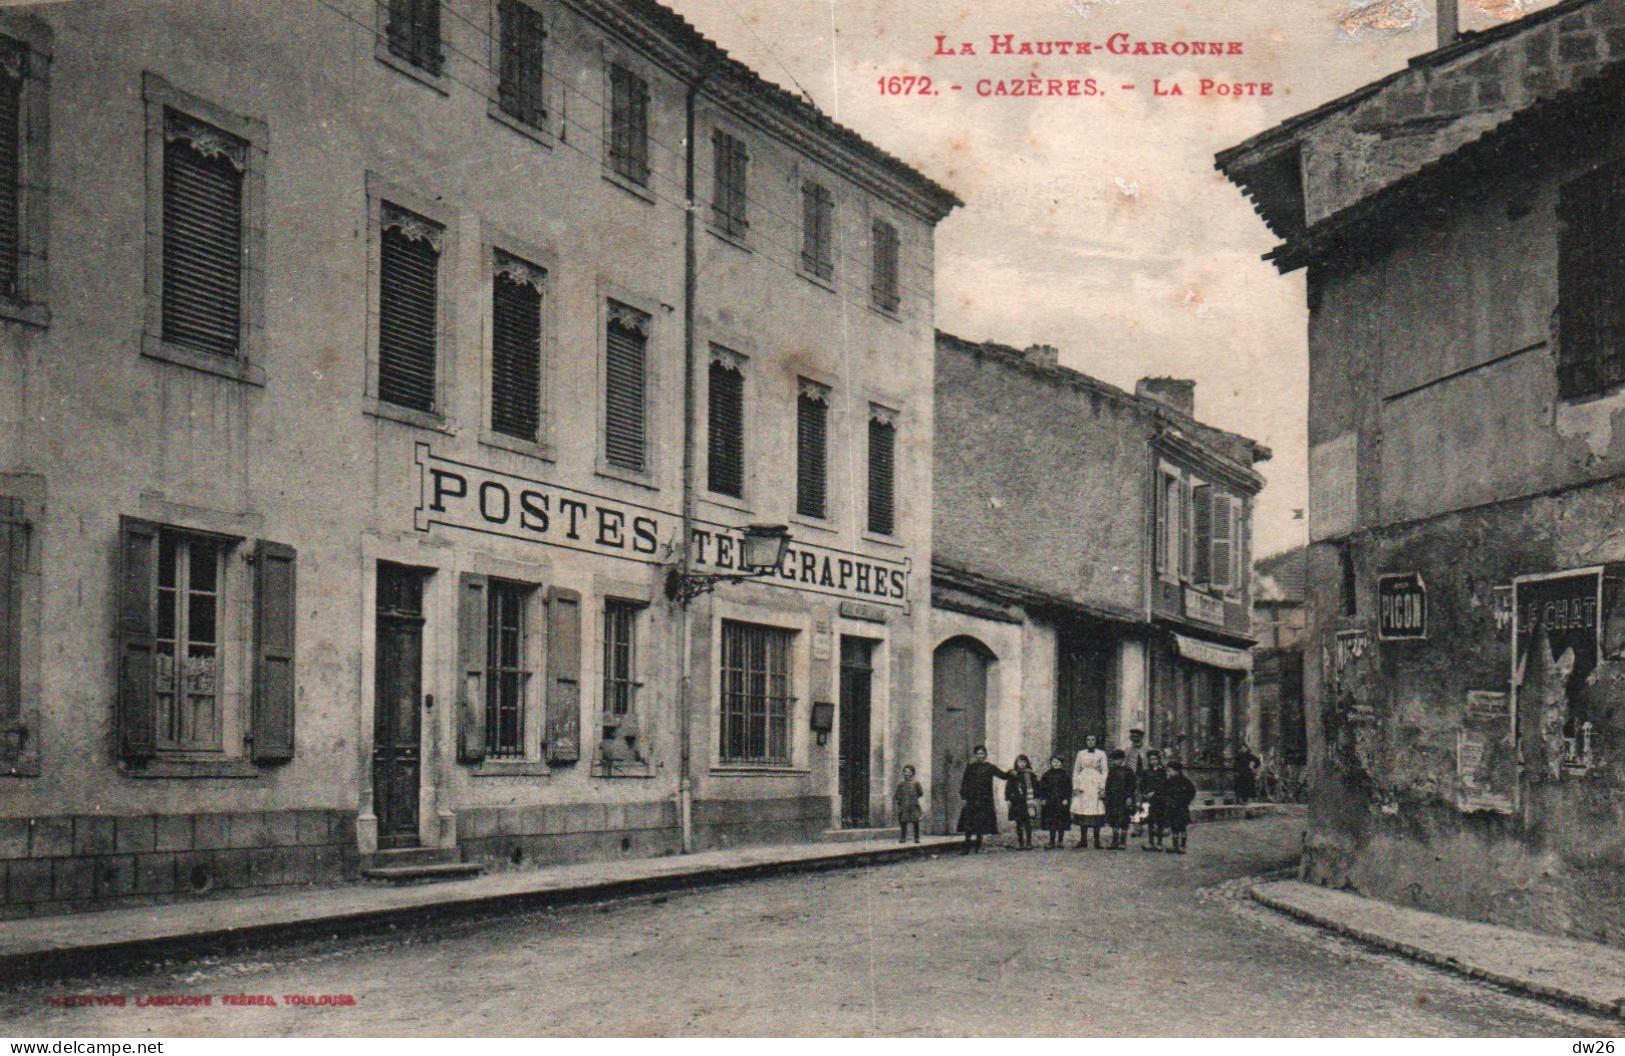 Cazères (Haute-Garonne) La Poste, Postes, Télégraphes - Phototypie Labouche Frères - Carte N° 1672 - Toulouse